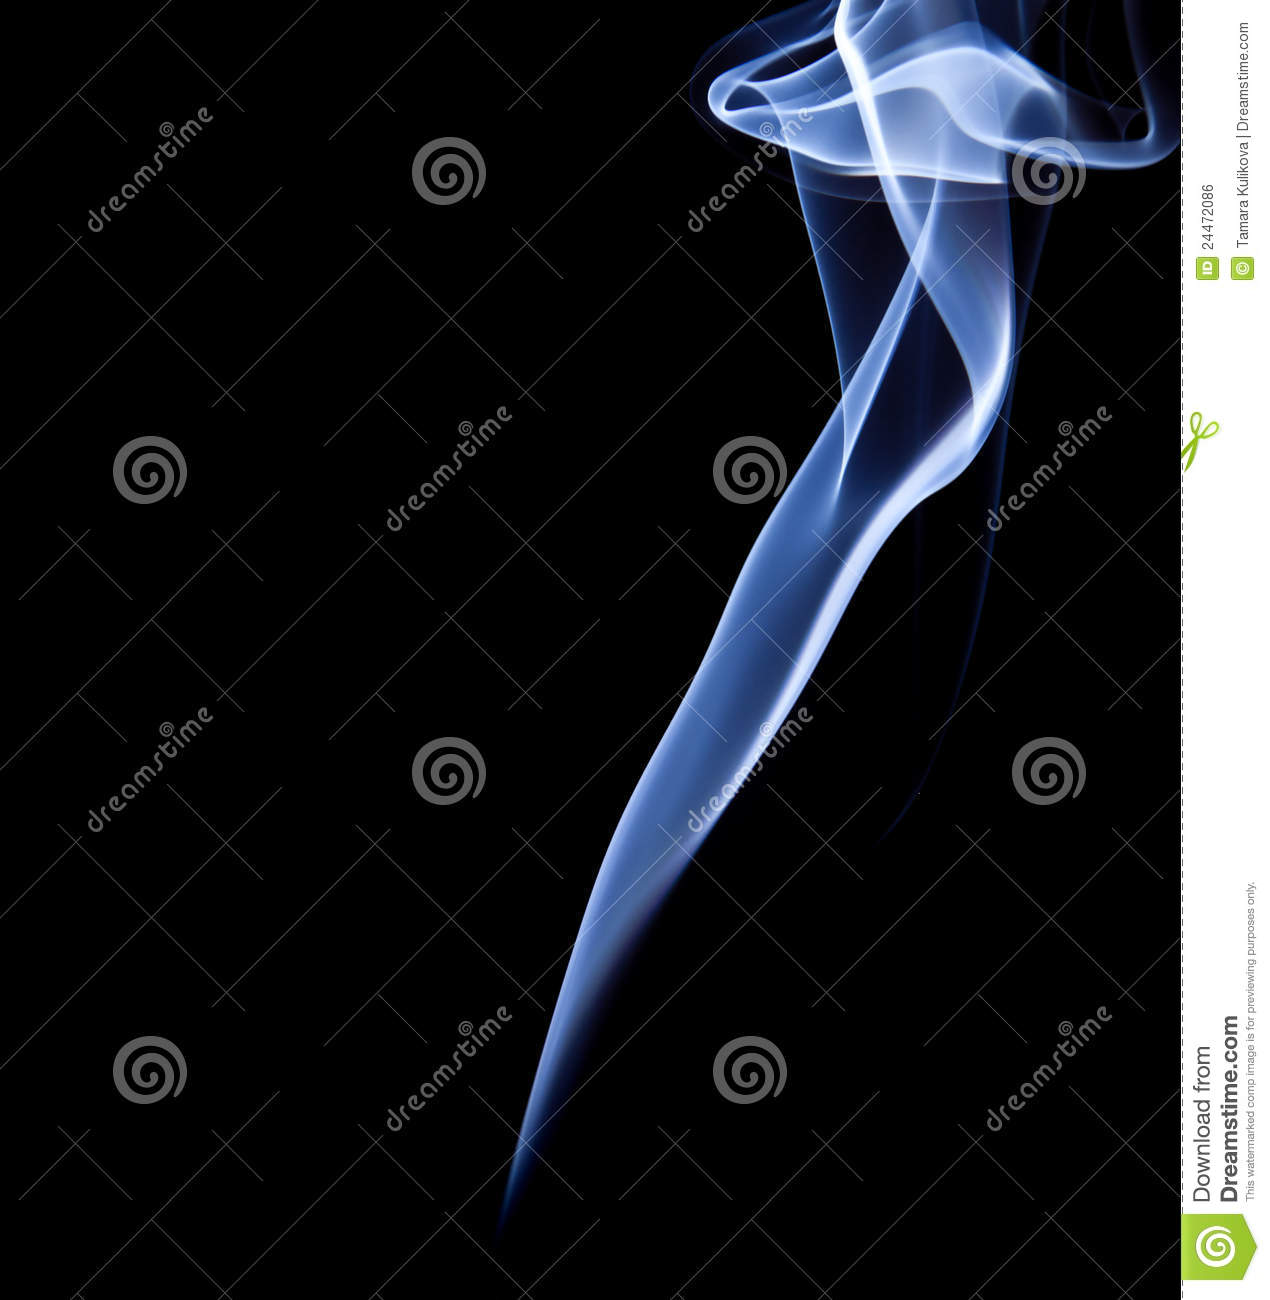 Wisp Of Smoke Royalty Free Stock Image   Image  24472086